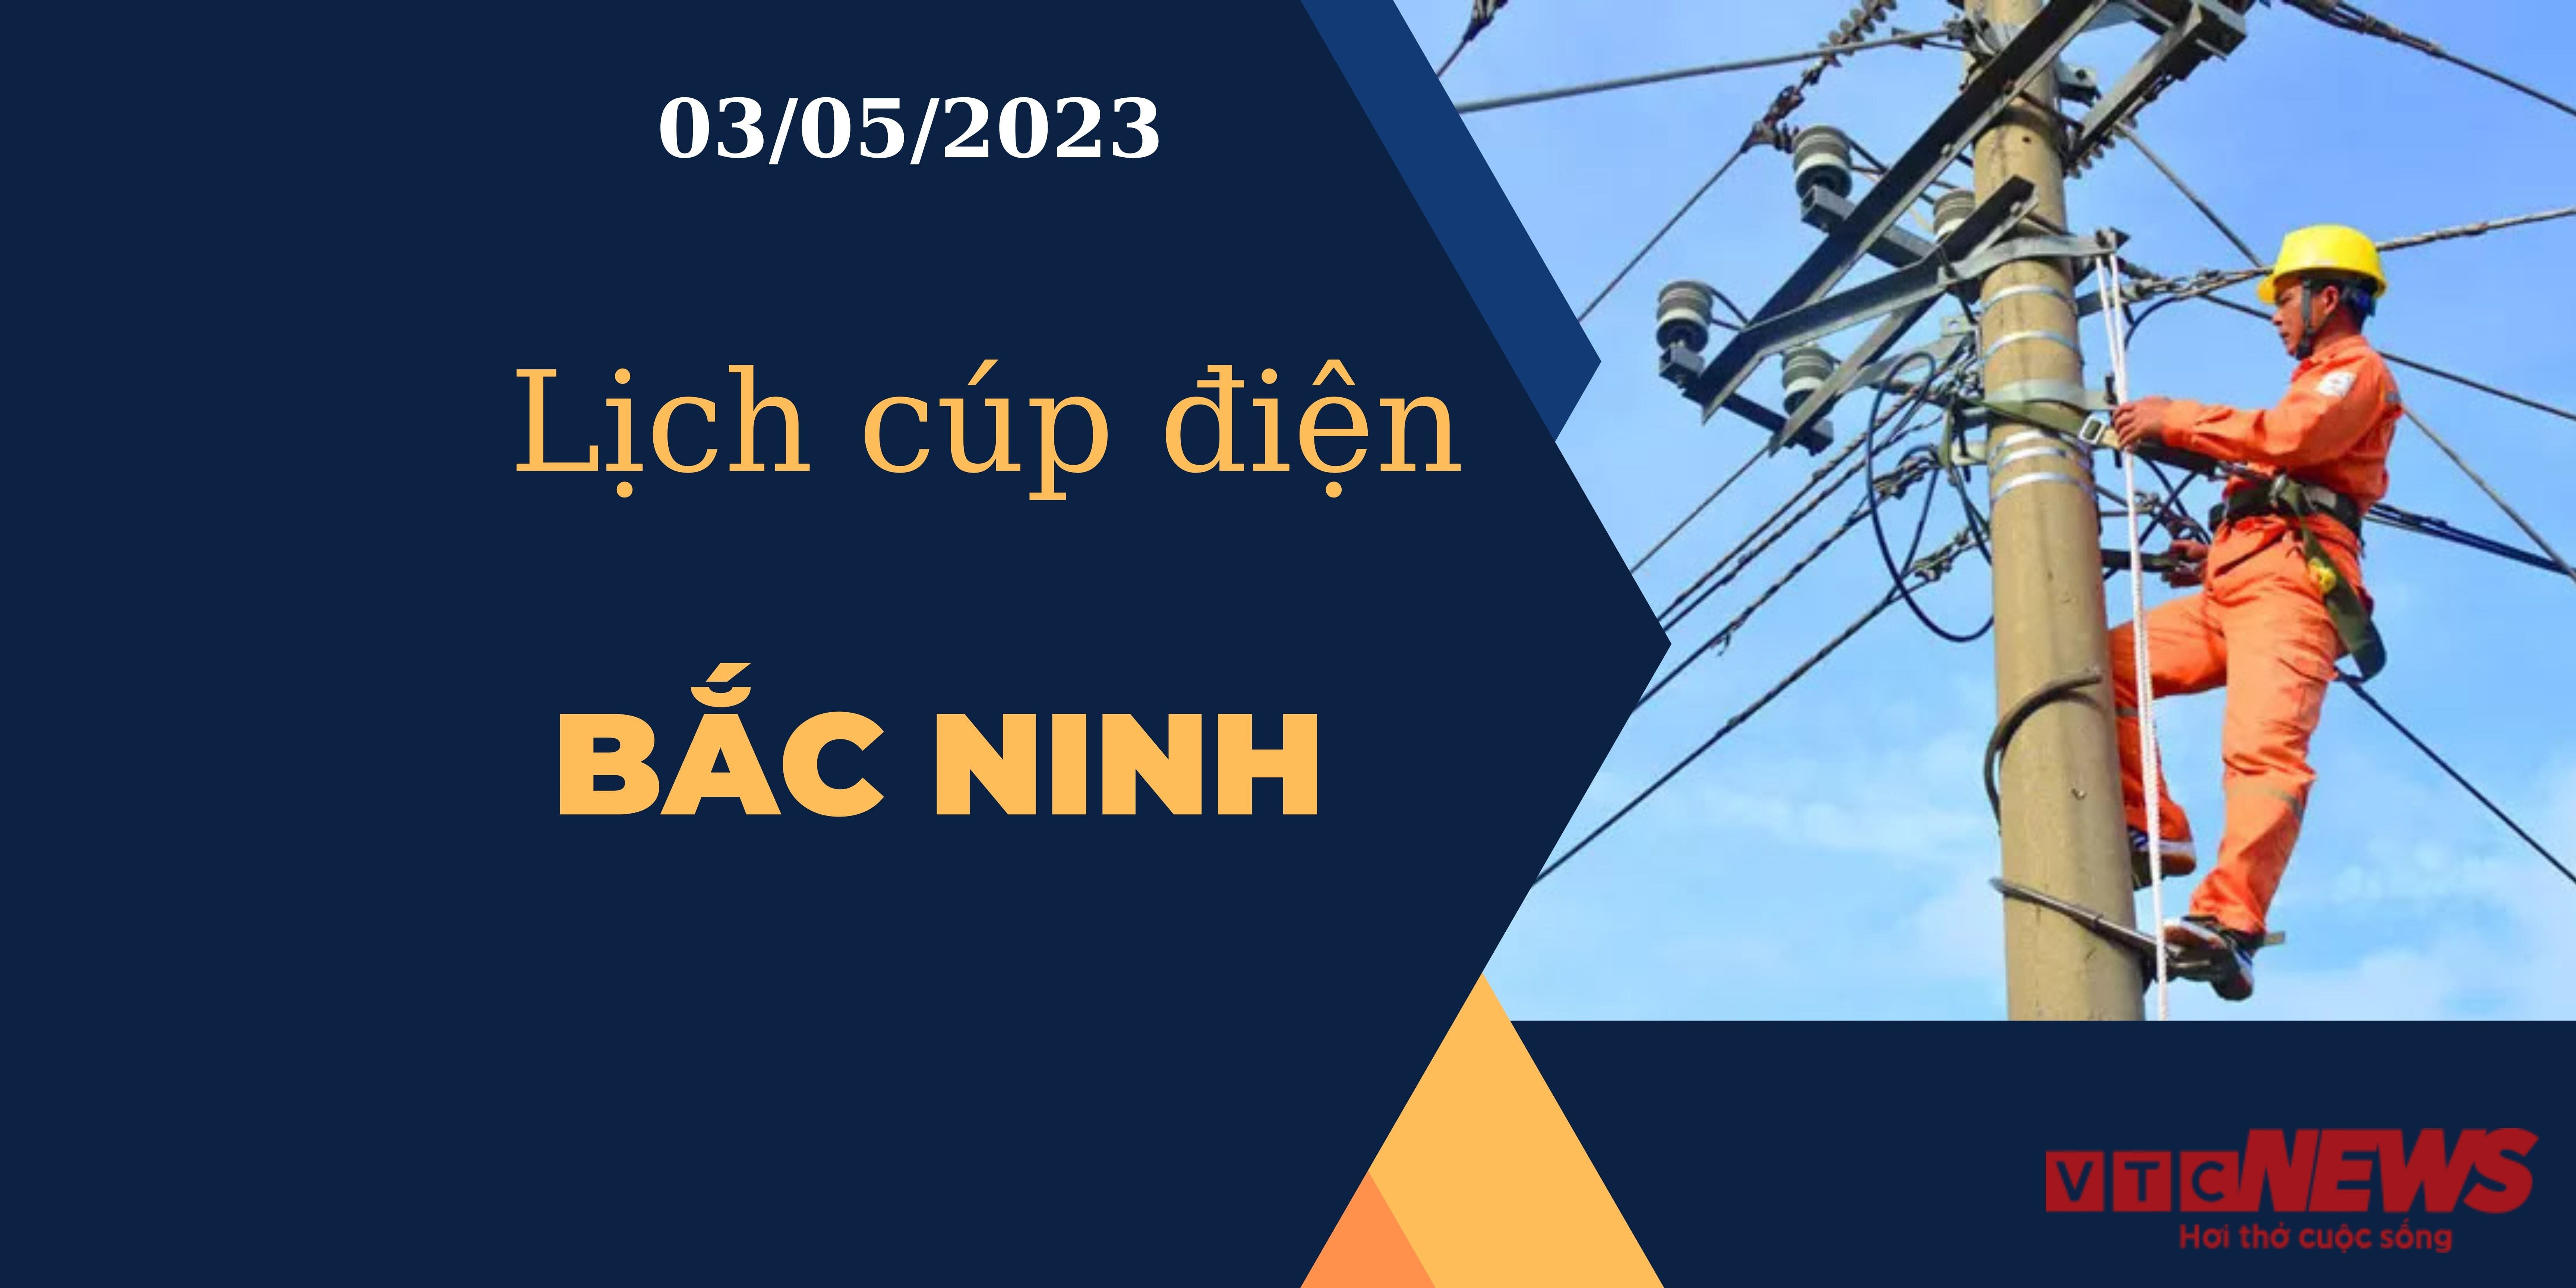 Lịch cúp điện hôm nay tại  Bắc Ninh ngày 03/05/2023 - 1